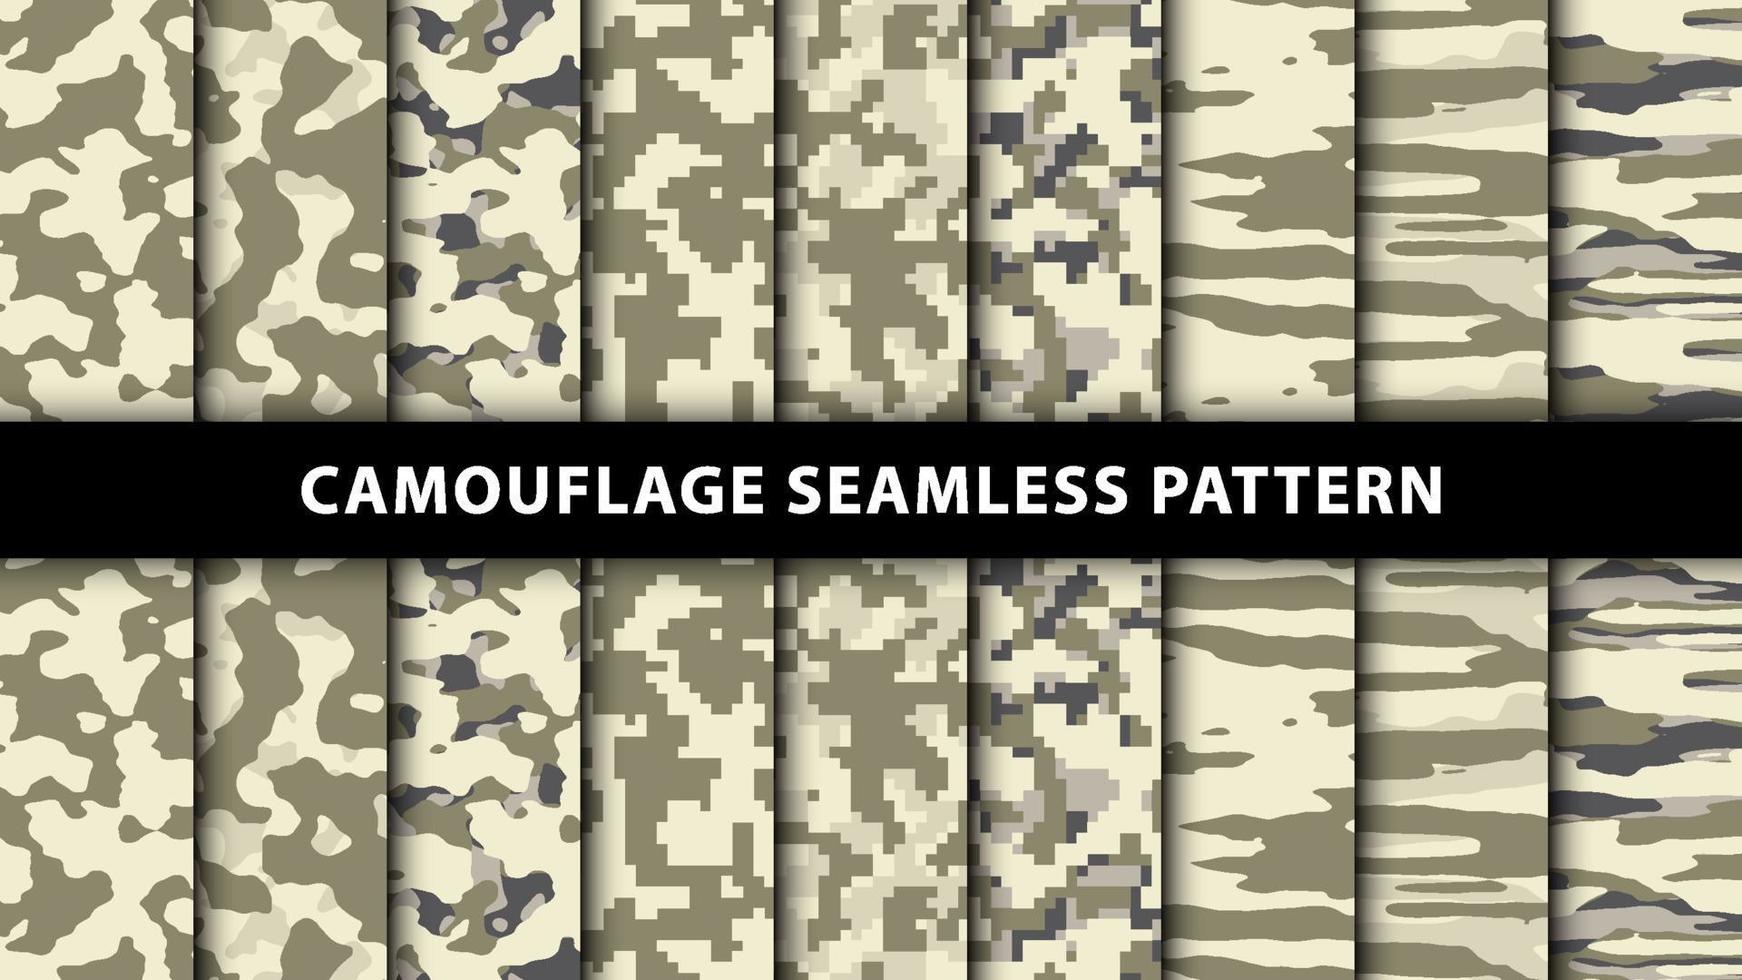 militära och armé kamouflage sömlösa mönster vektor